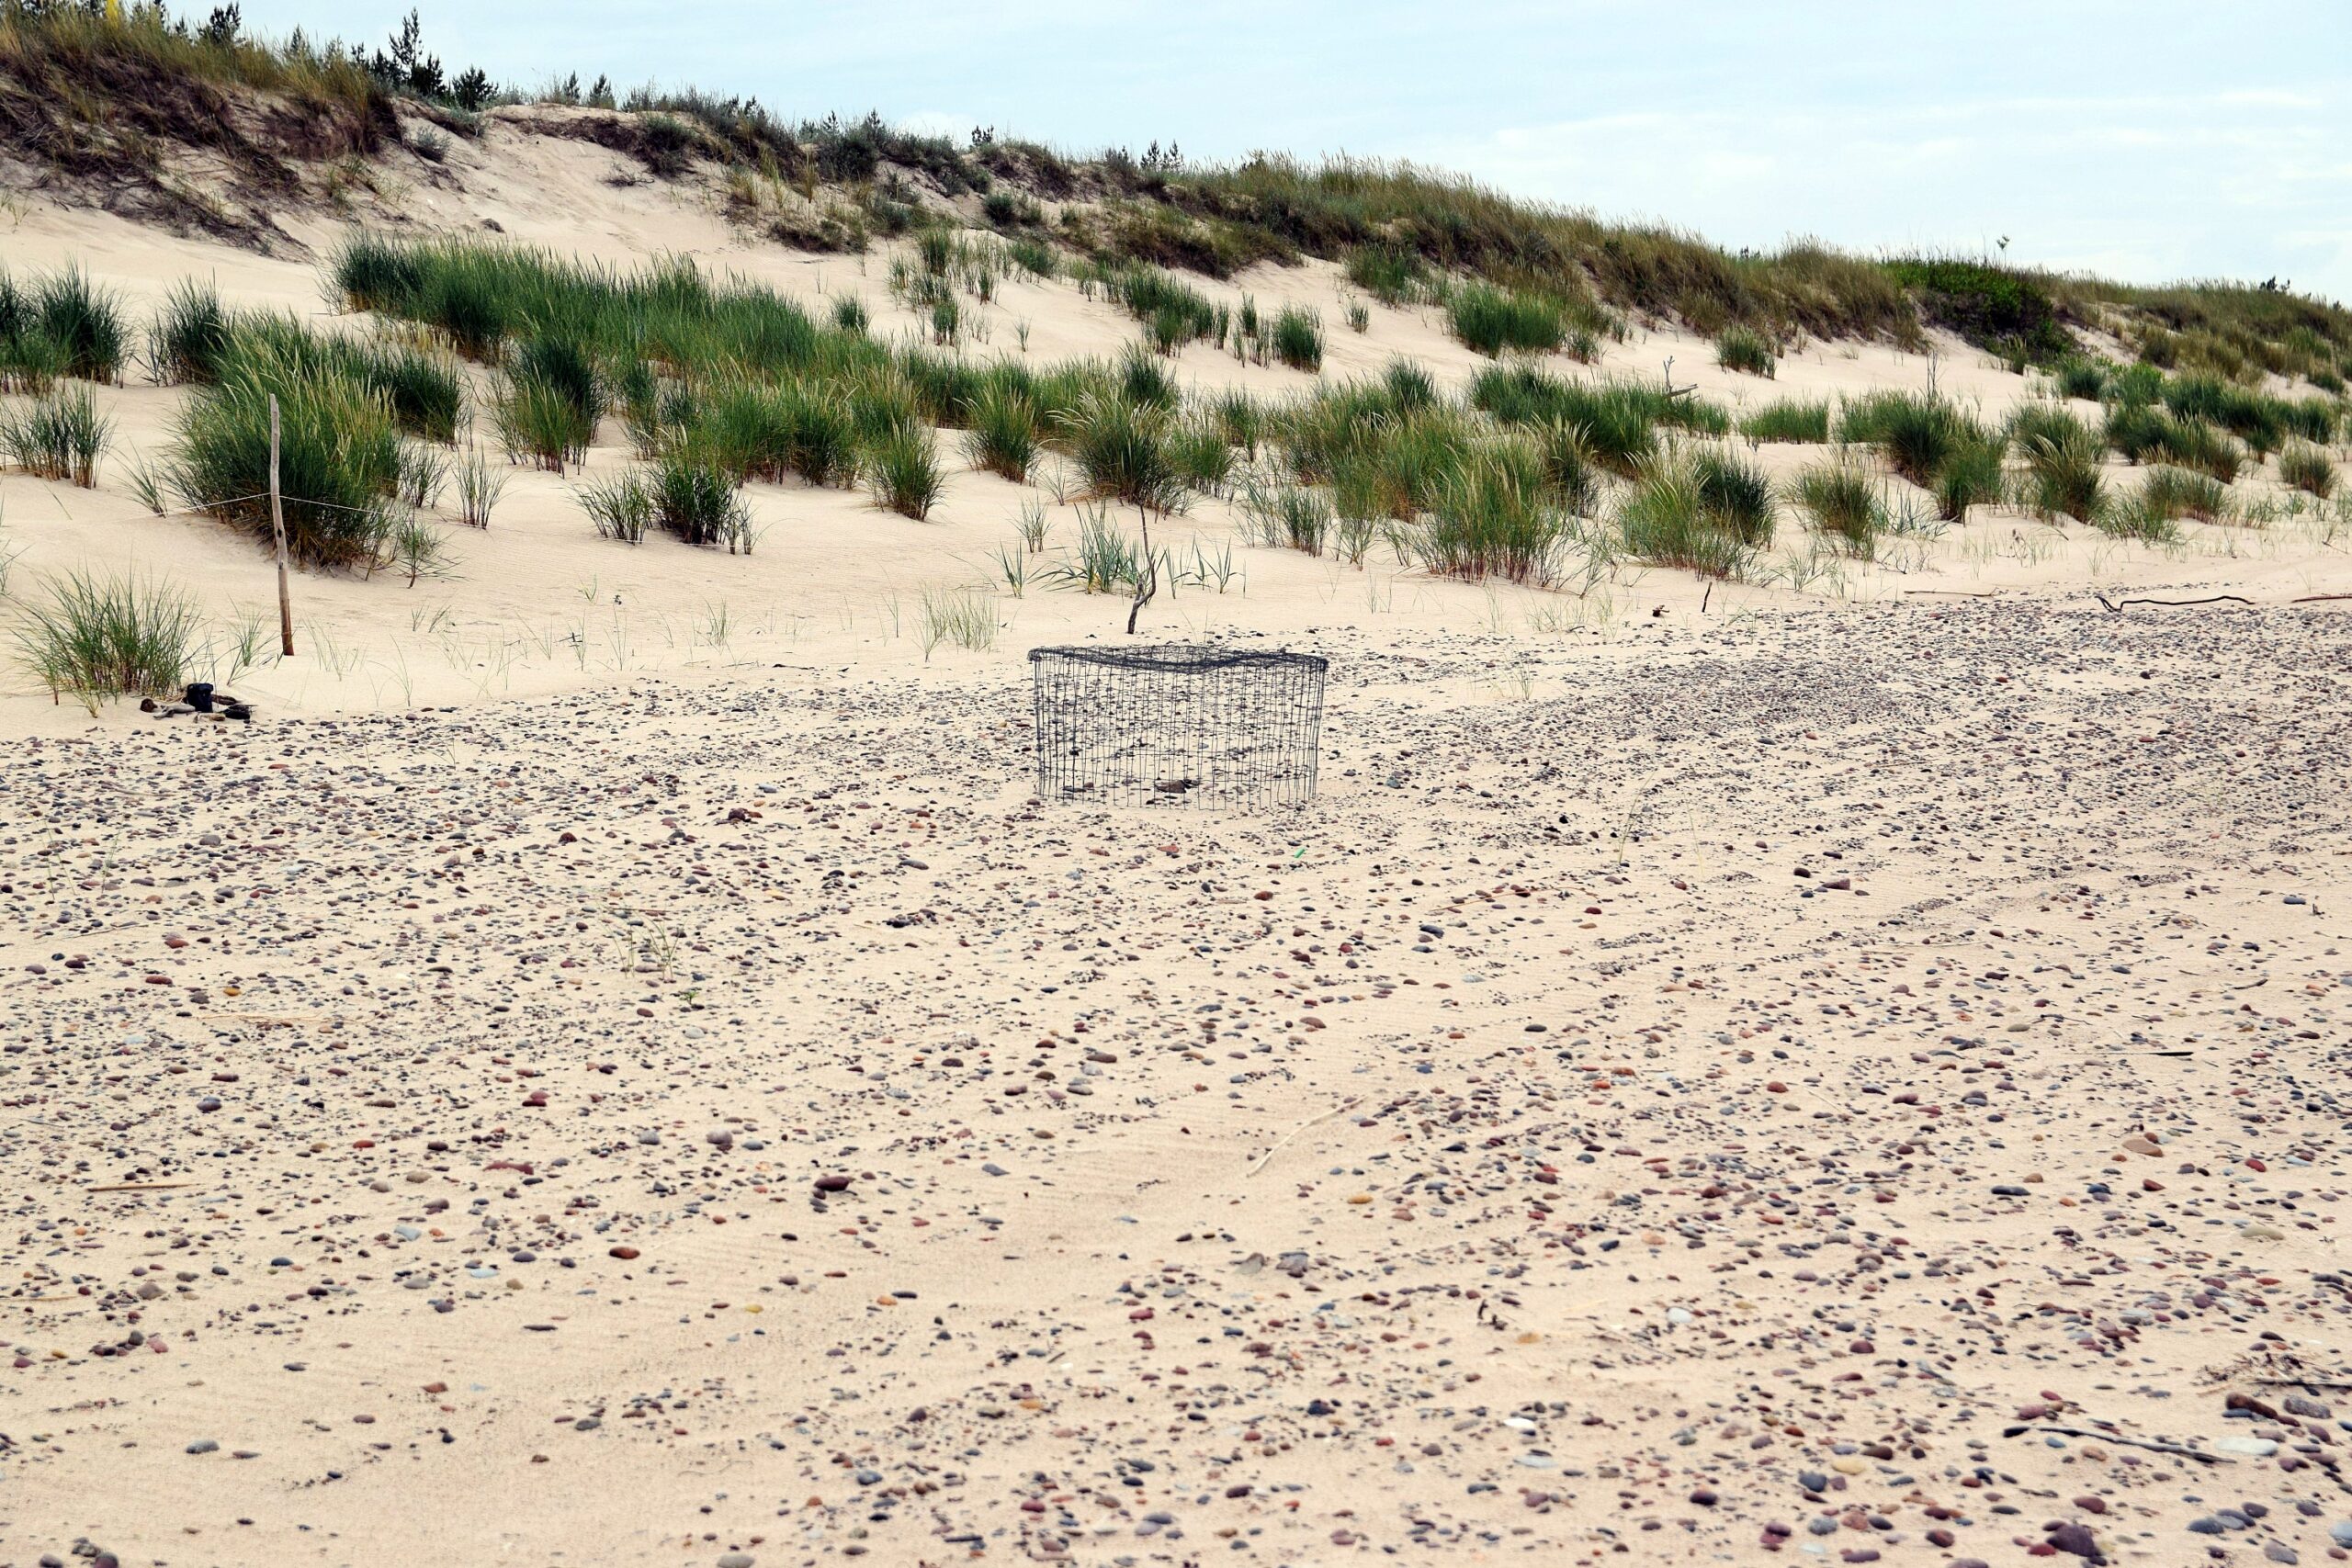 Zdjęcie plaży, na której znajduje się kosz z metalowej siatki, chroniący sieweczkę wysiadującą jaja.